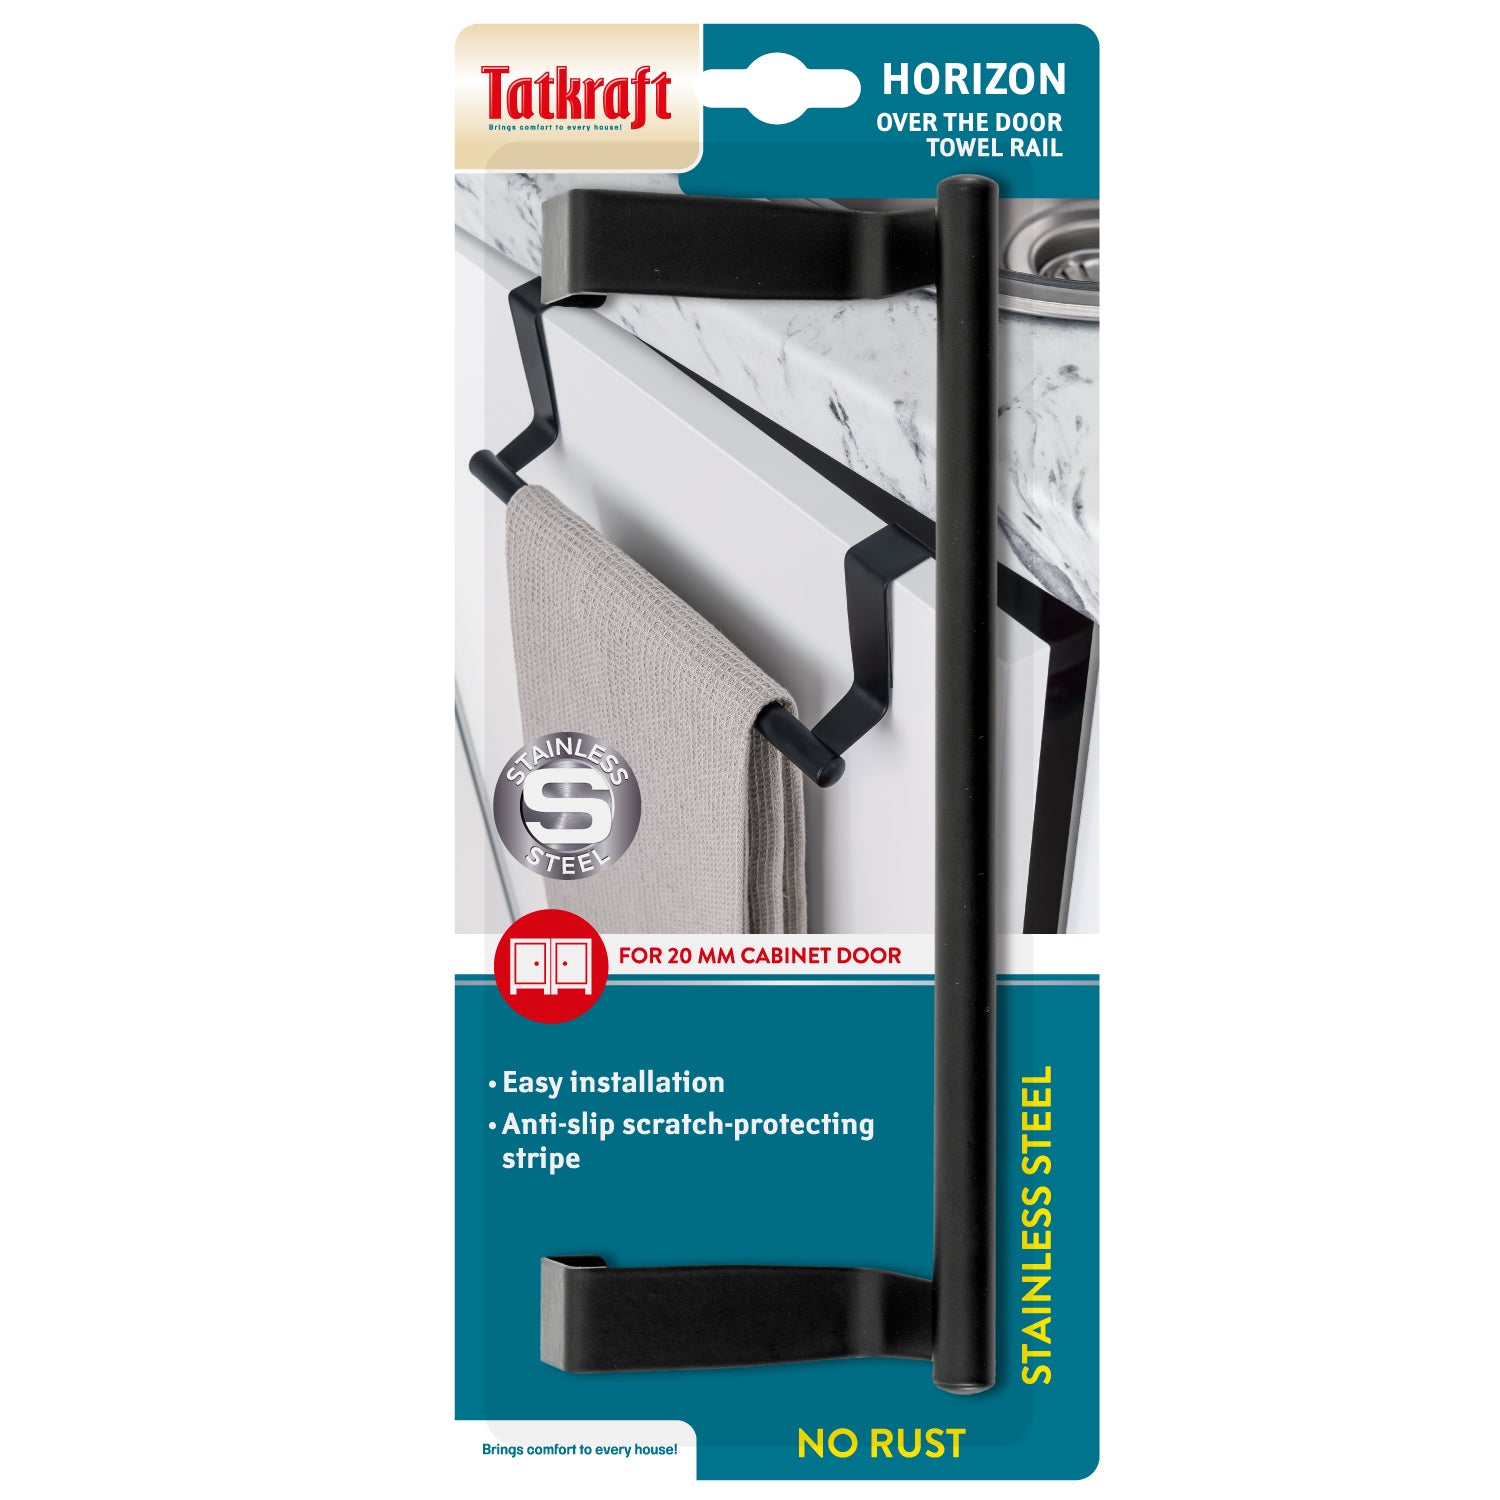 Over Door Towel Rail, Over the Door Towel Rail, Towel Holder for Cupboard Drawer Cabinet,  Tatkraft Horizon Black, 9